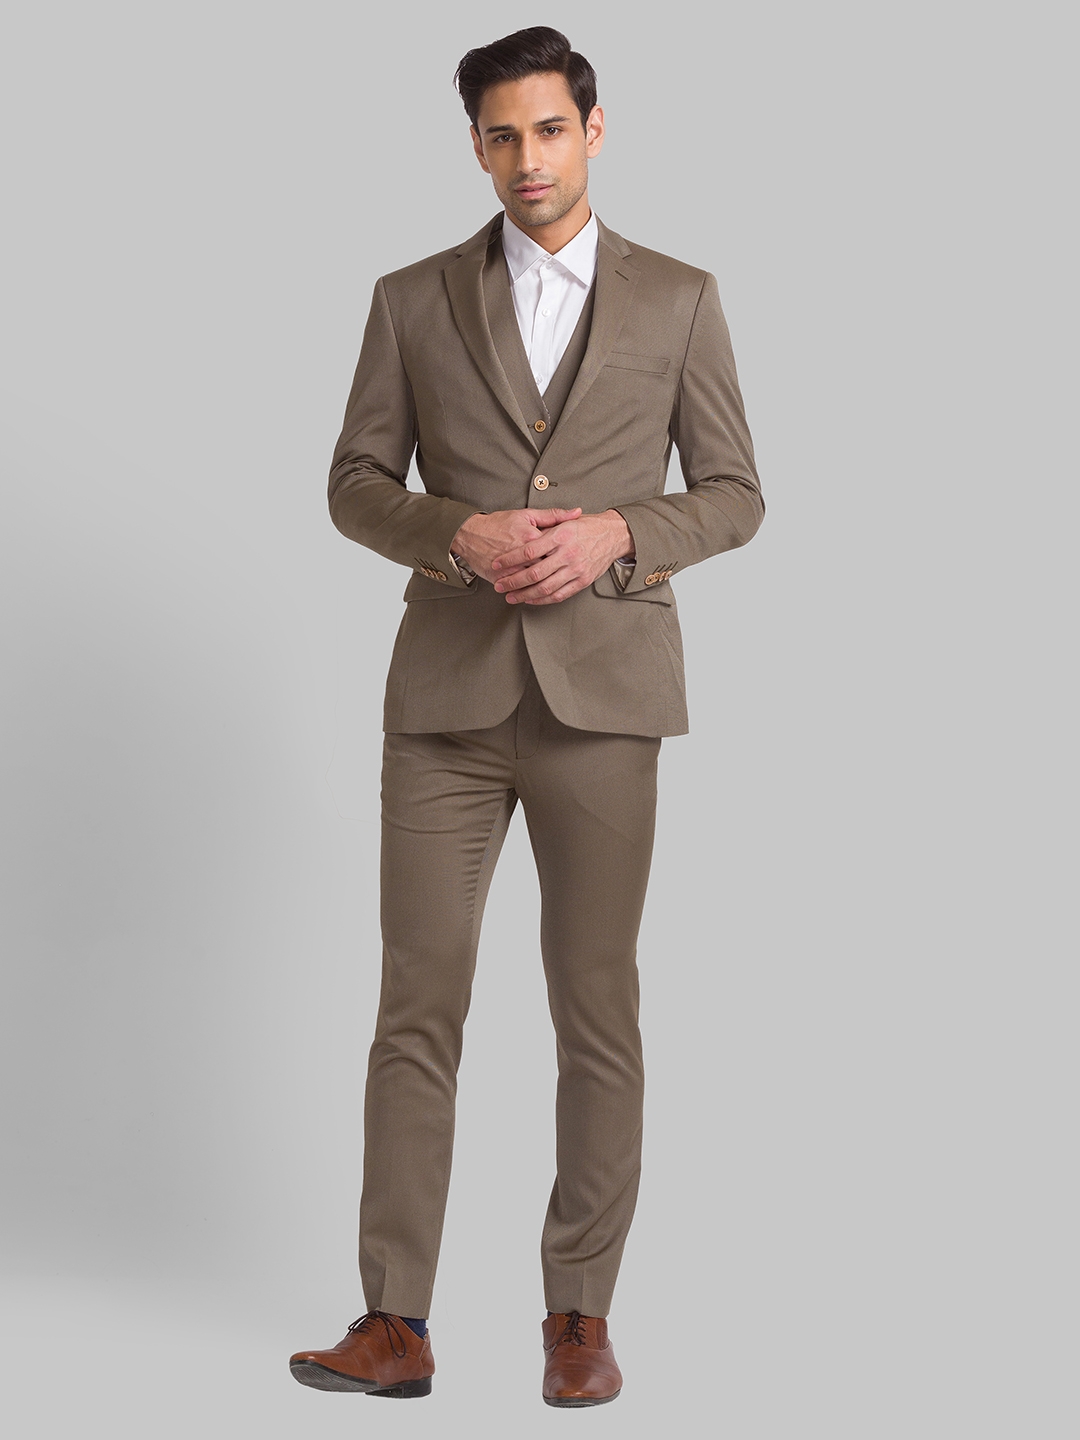 Dark Brown Suit - Attire